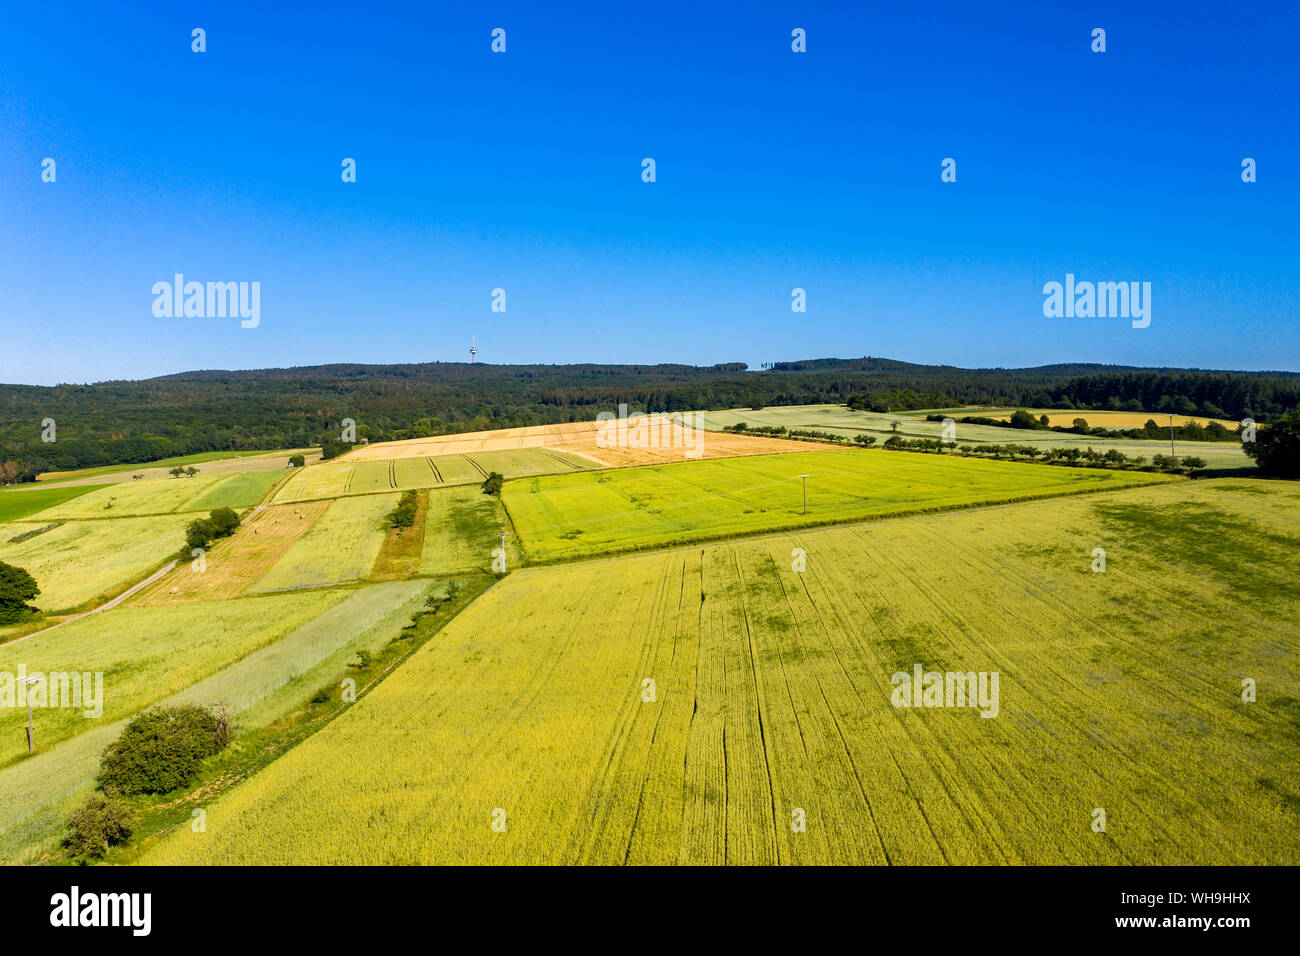 Vue aérienne sur des champs de céréales, prairies et forêt, Wetterau, Allemagne Banque D'Images